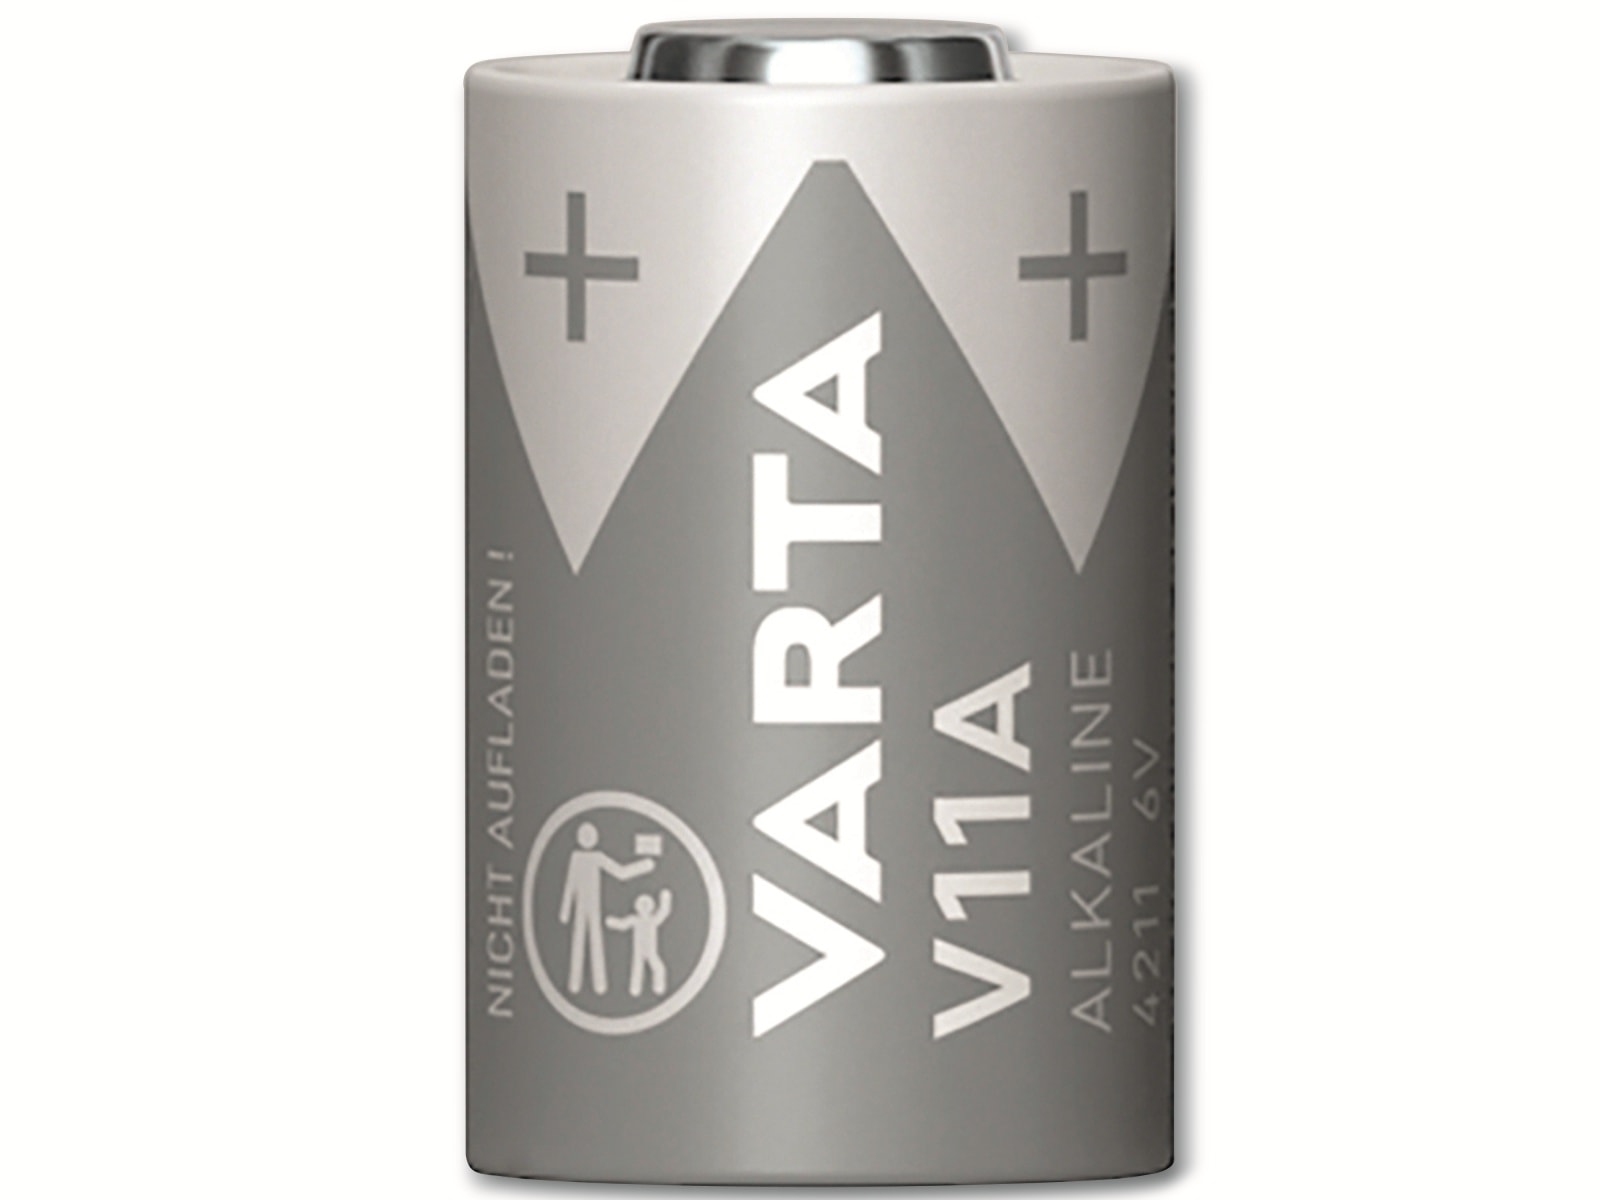 VARTA Batterie Alkaline, MN11, V11A, 6V, Electronics, 1 Stück